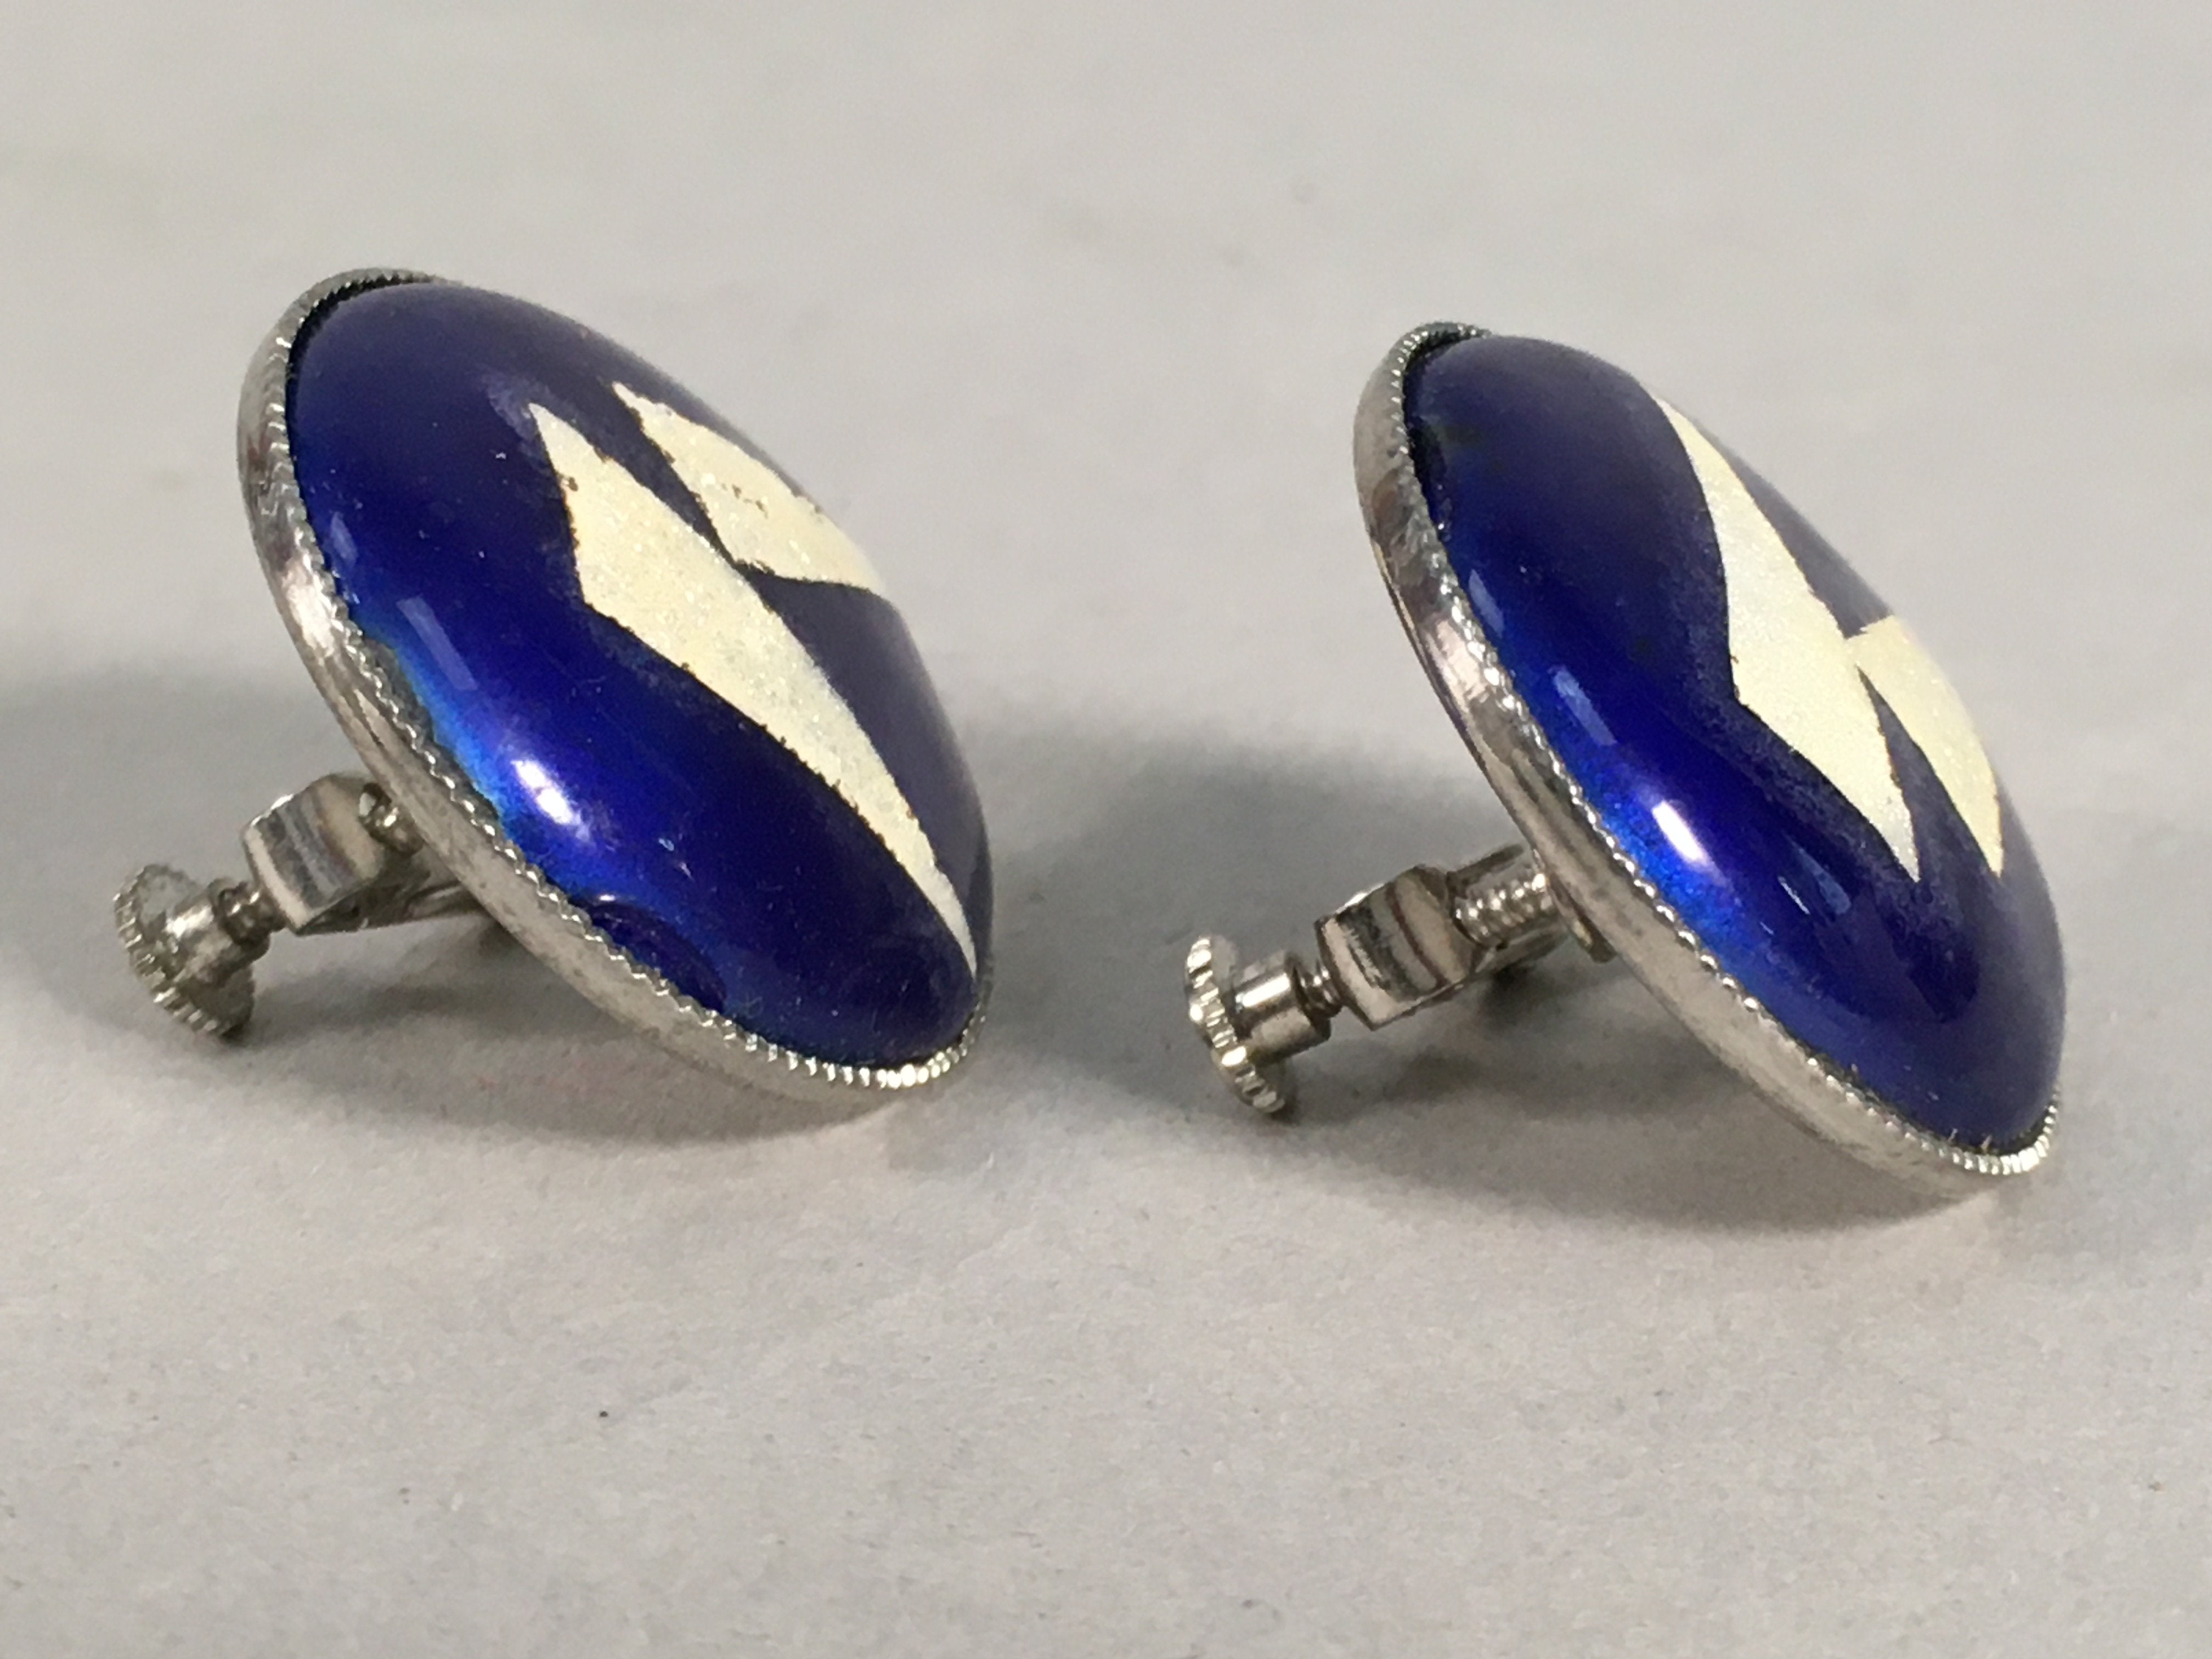 Japanese Cloisonne Earrings Vtg Metal Glass Shippo Round Gold Blue JK76